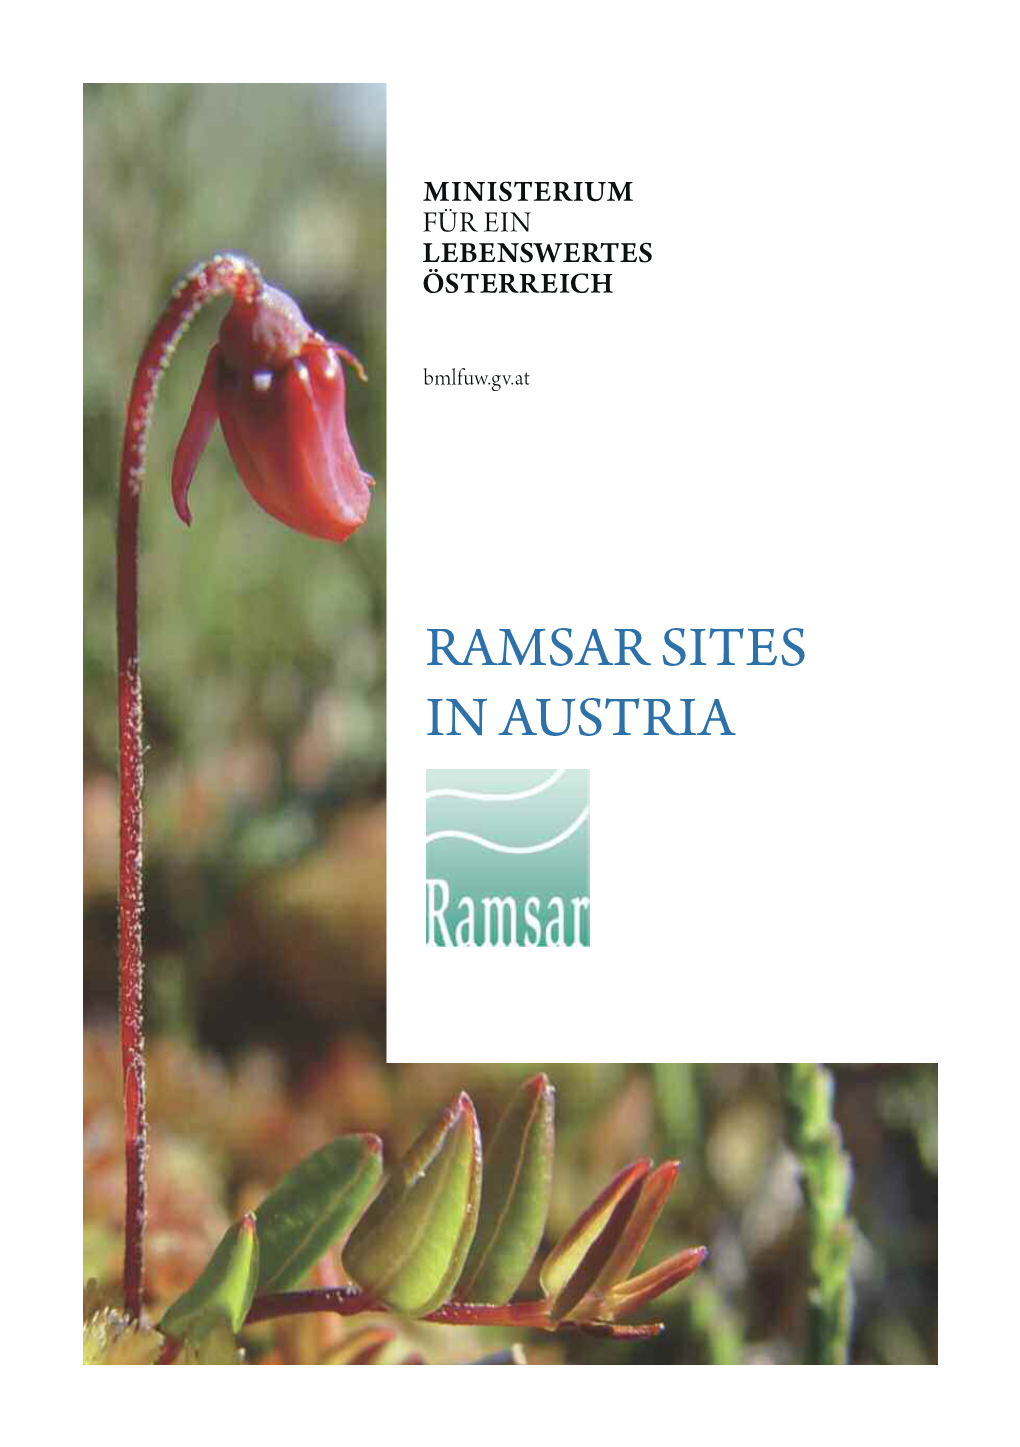 Ramsar Sites in Austria IMPR Int